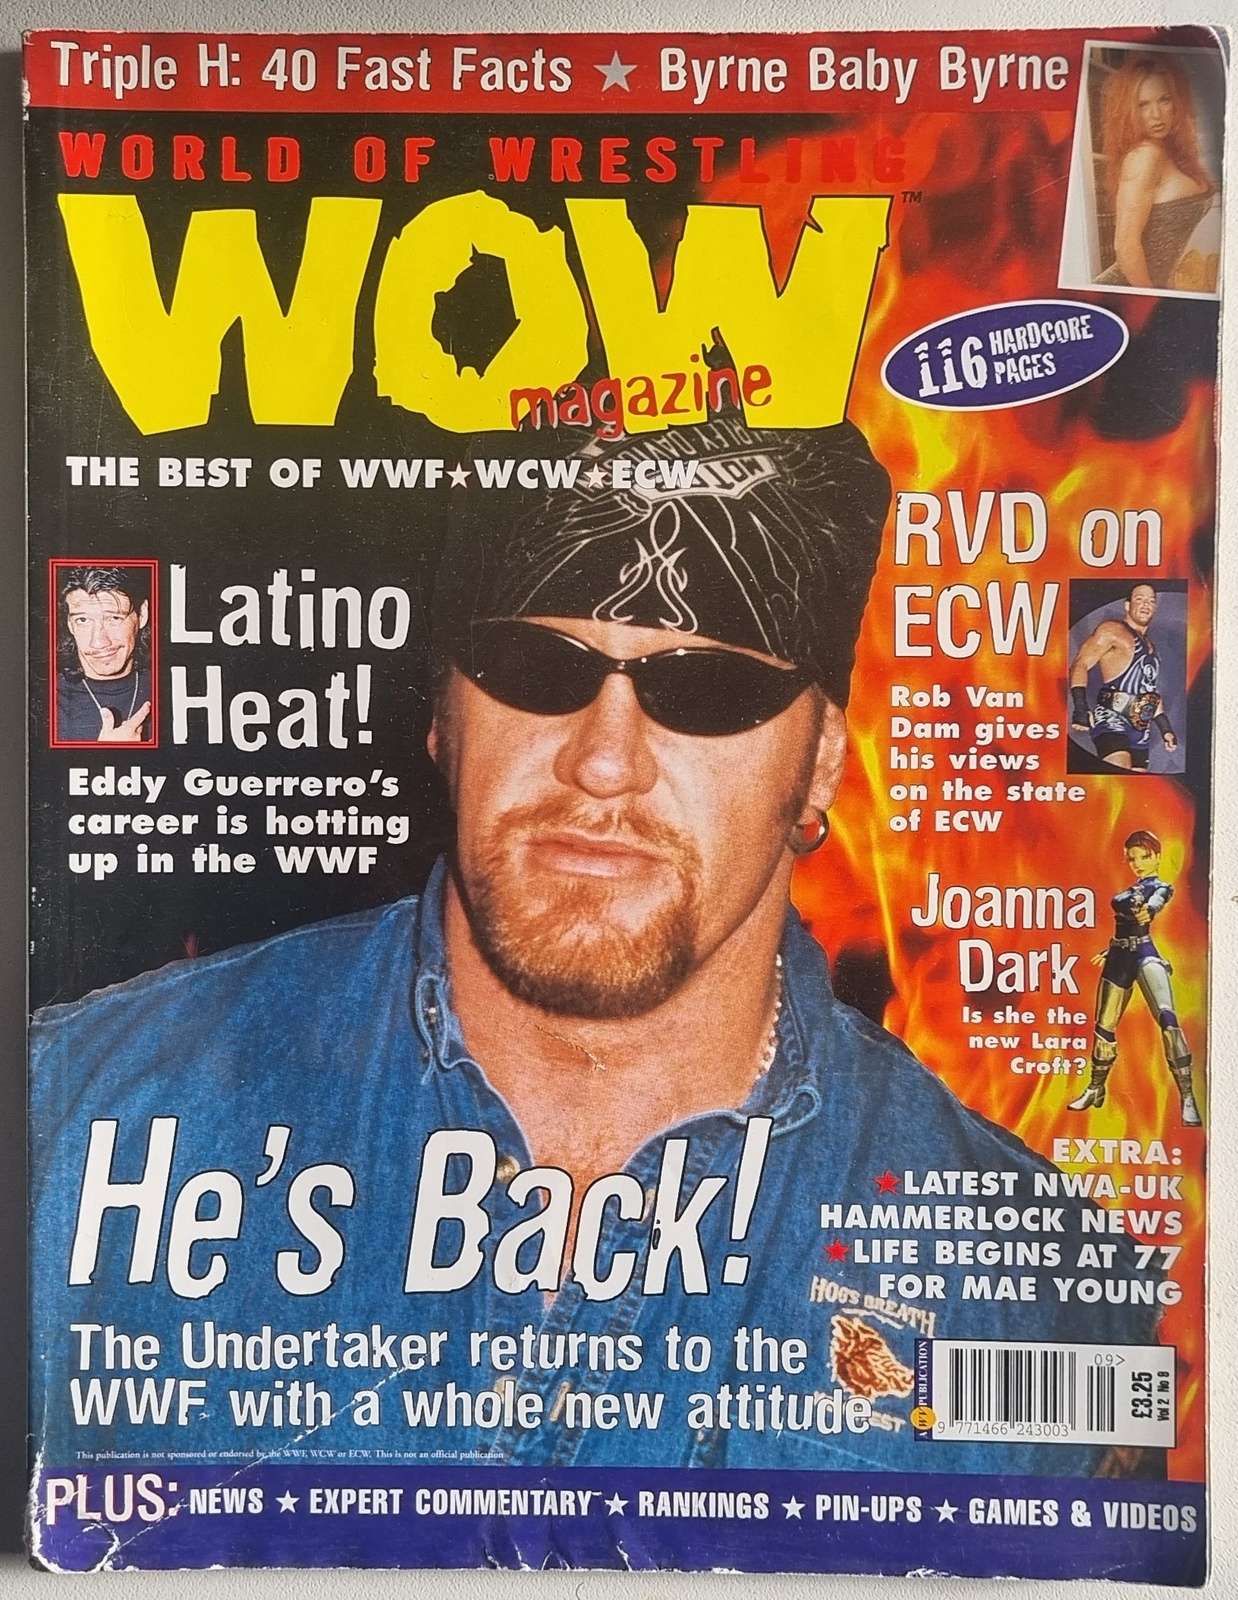 World of Wrestling Magazine - September 2000